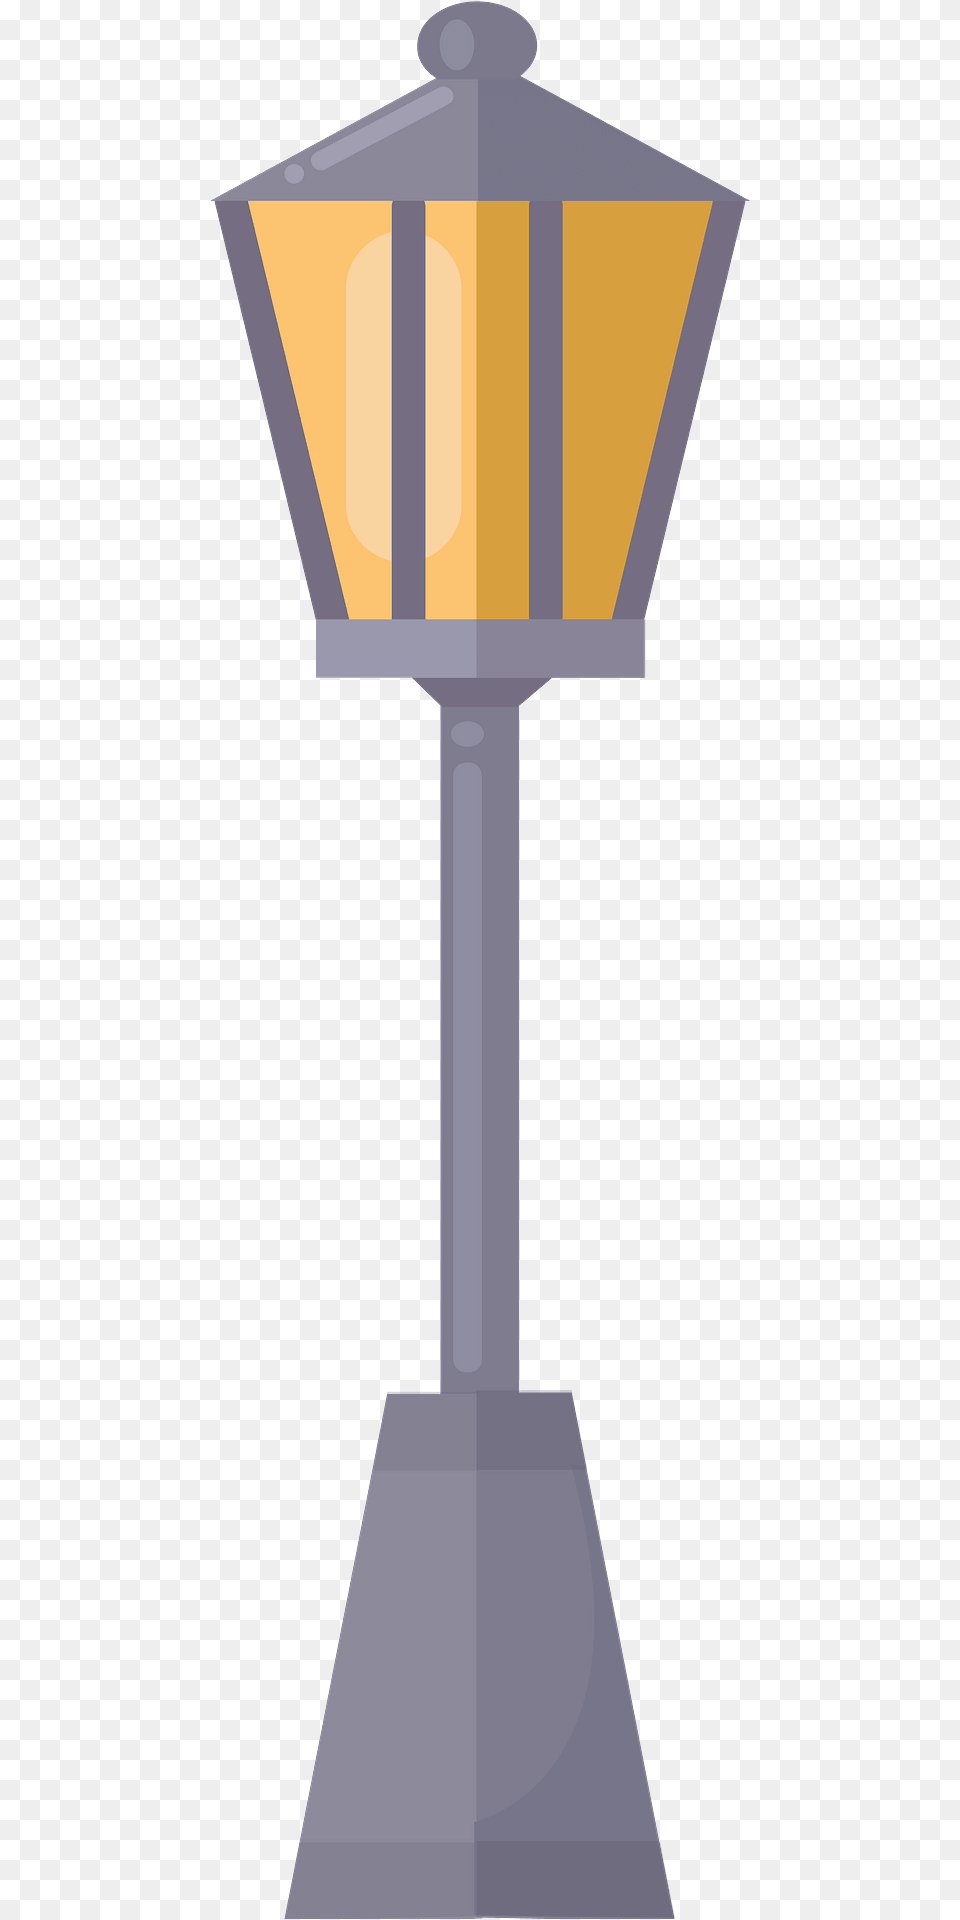 Street Lamp Clipart, Cross, Symbol, Lamp Post, Lampshade Free Png Download